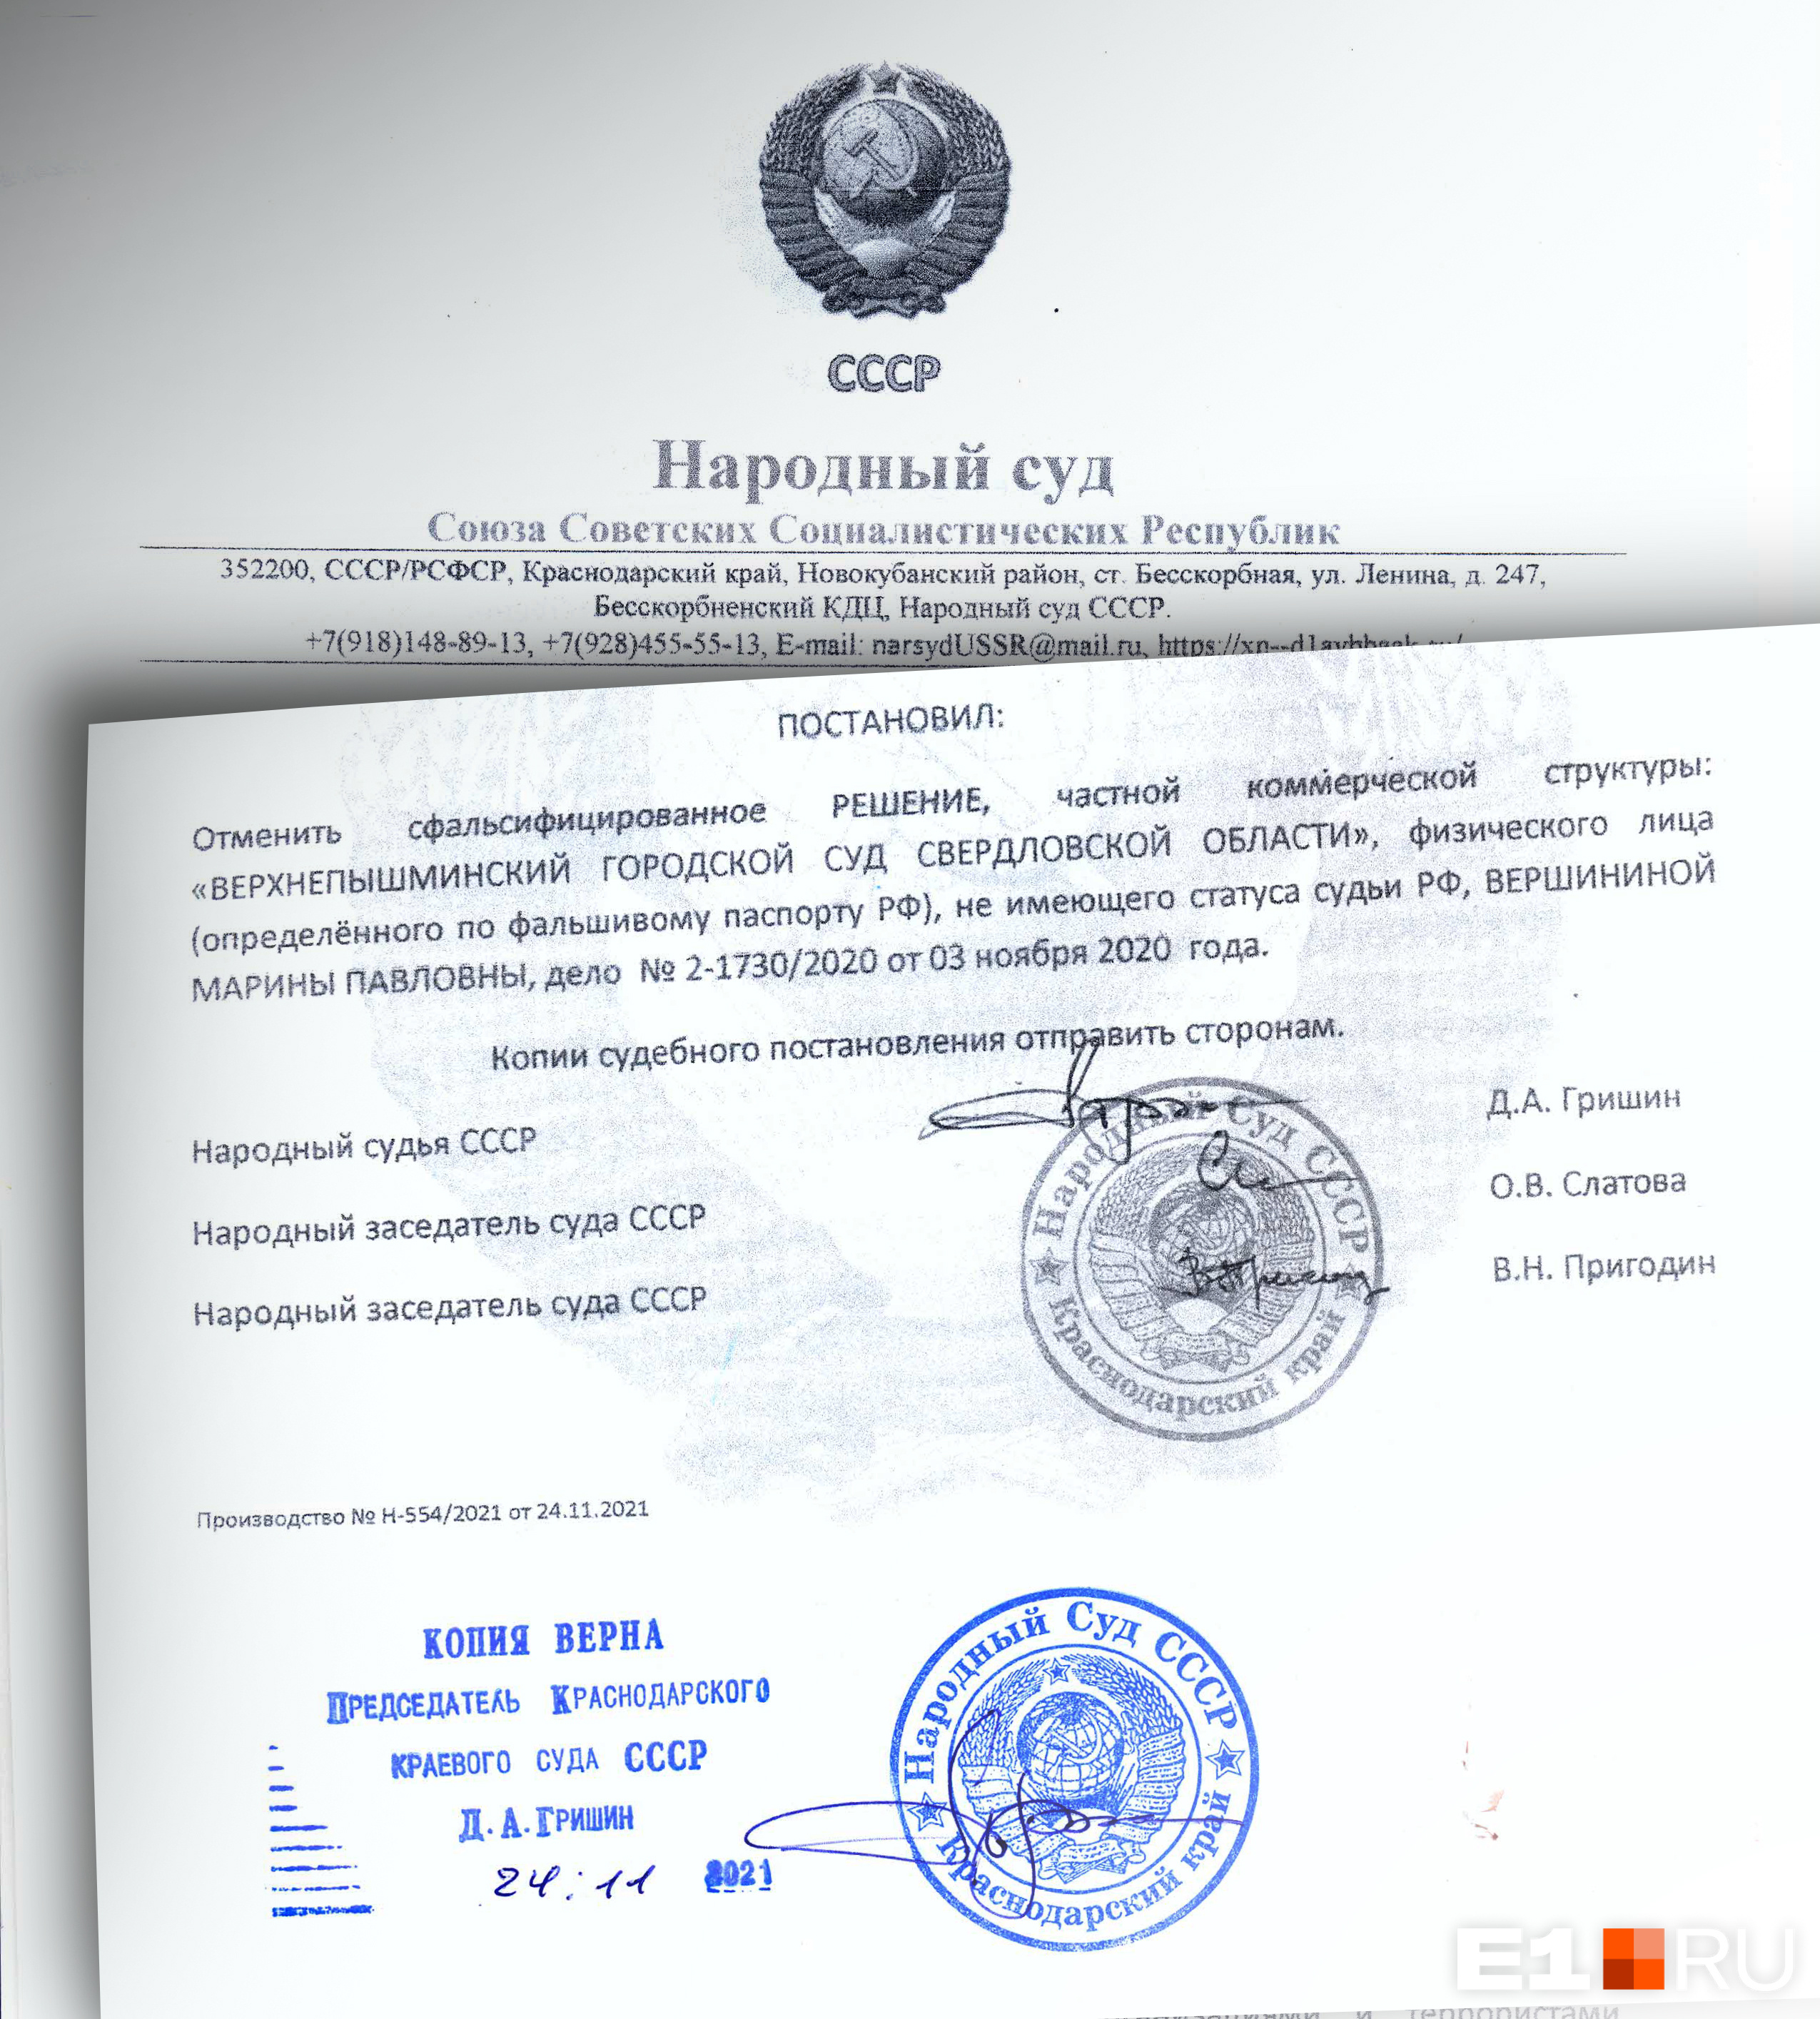 Этой выпиской «народный суд СССР» «отменил» решение Верхнепышминского городского суда о реализации квартиры с торгов